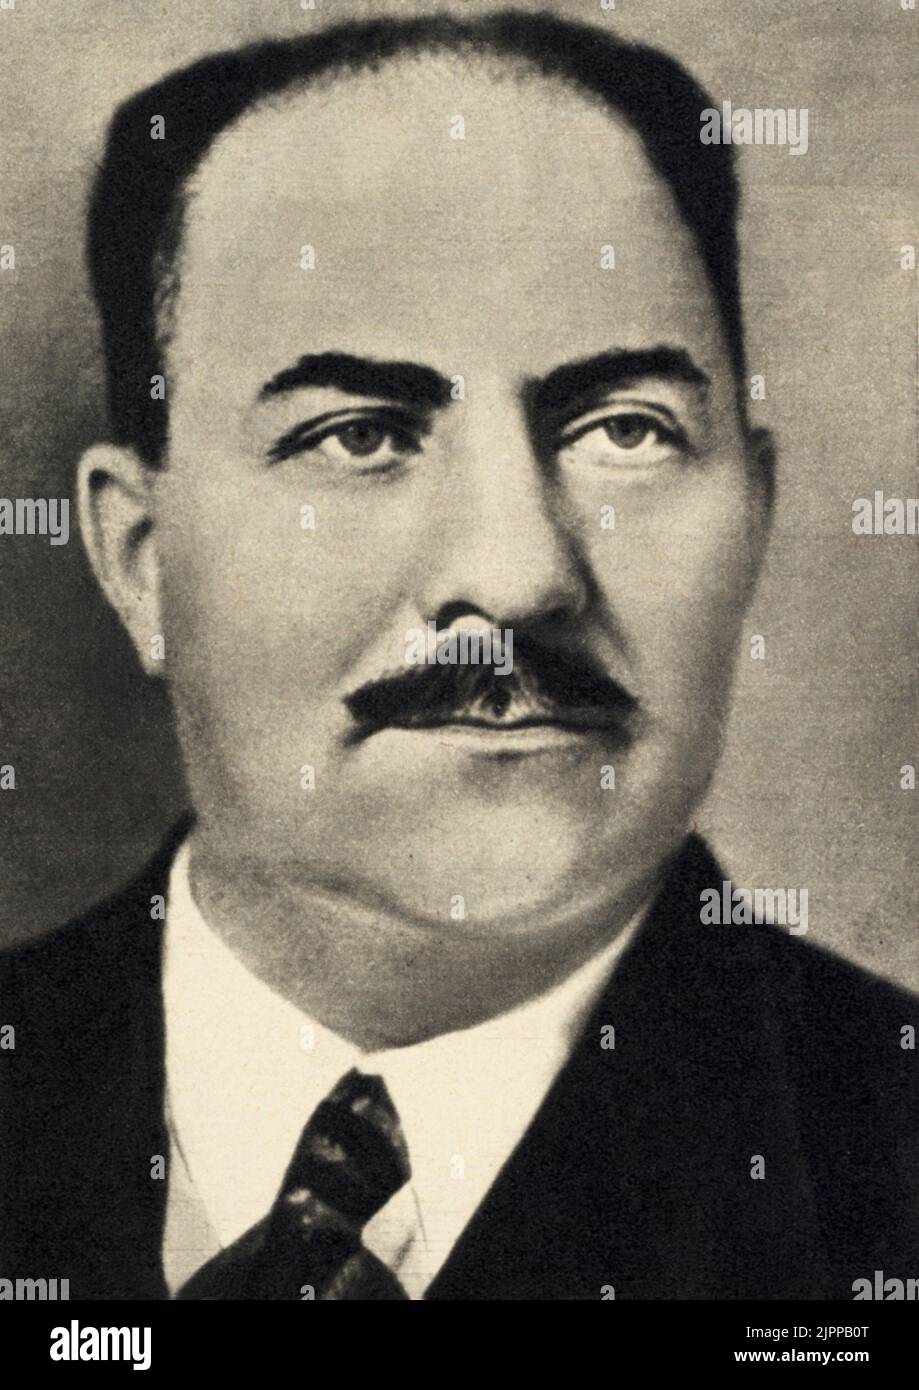 1940, RUSSIA : il lupo del Cremlino Lazat Moiseevic KAGANOVIC (1893 - 1991) , Coviet Politicia . Membro di BosCENIC Moviment dal 1911, impegnato in ottobre Revoluruin e negli anni '20 è stato uno dei più importanti collaboratori Stalin , Segretario del Competee Centrale del P.C.U. ( 1928 ). Membro del Politburo (1936-1957), Ministro della Giustizia Molitaria durante la seconda guerra mondiale. Deposto da Chruschev nel 1957 - KAGANOVICH - POLITICO - POLITICO - COMUNISTA - COMUNISTA - COMUNISMO - COMUNISMO - URSS - ritratto - ritratto - baffi - baffi --- Archivio GBB Foto Stock